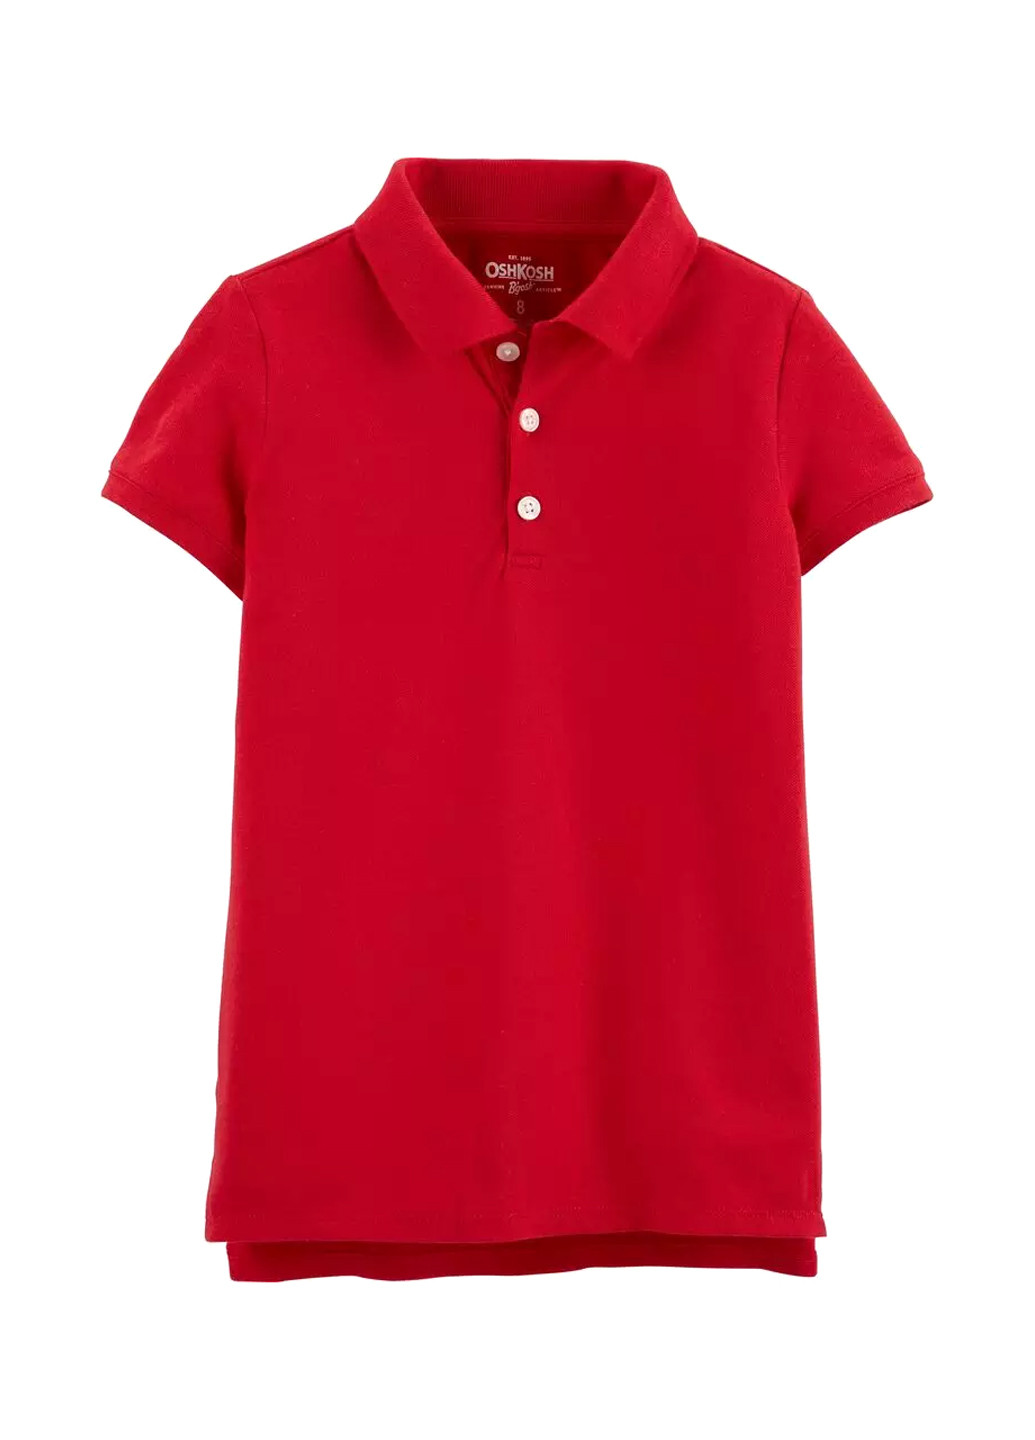 Красная детская футболка-поло для девочки OshKosh однотонная